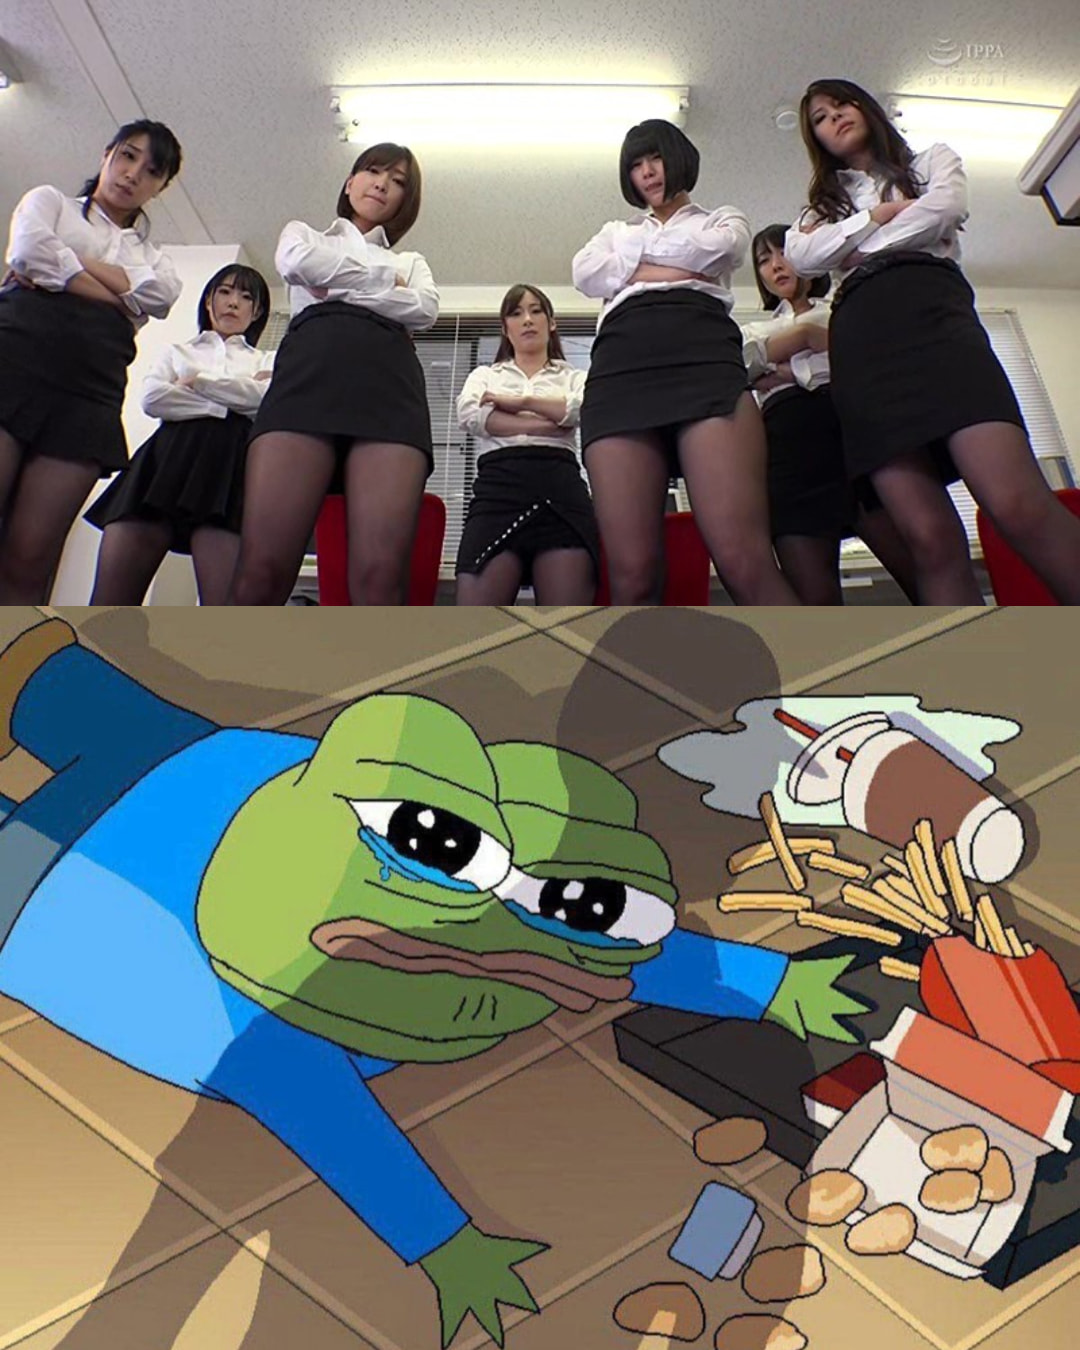 High Quality Apu Spills His Tendies - Japanese Girls Looking Down on Apu Blank Meme Template